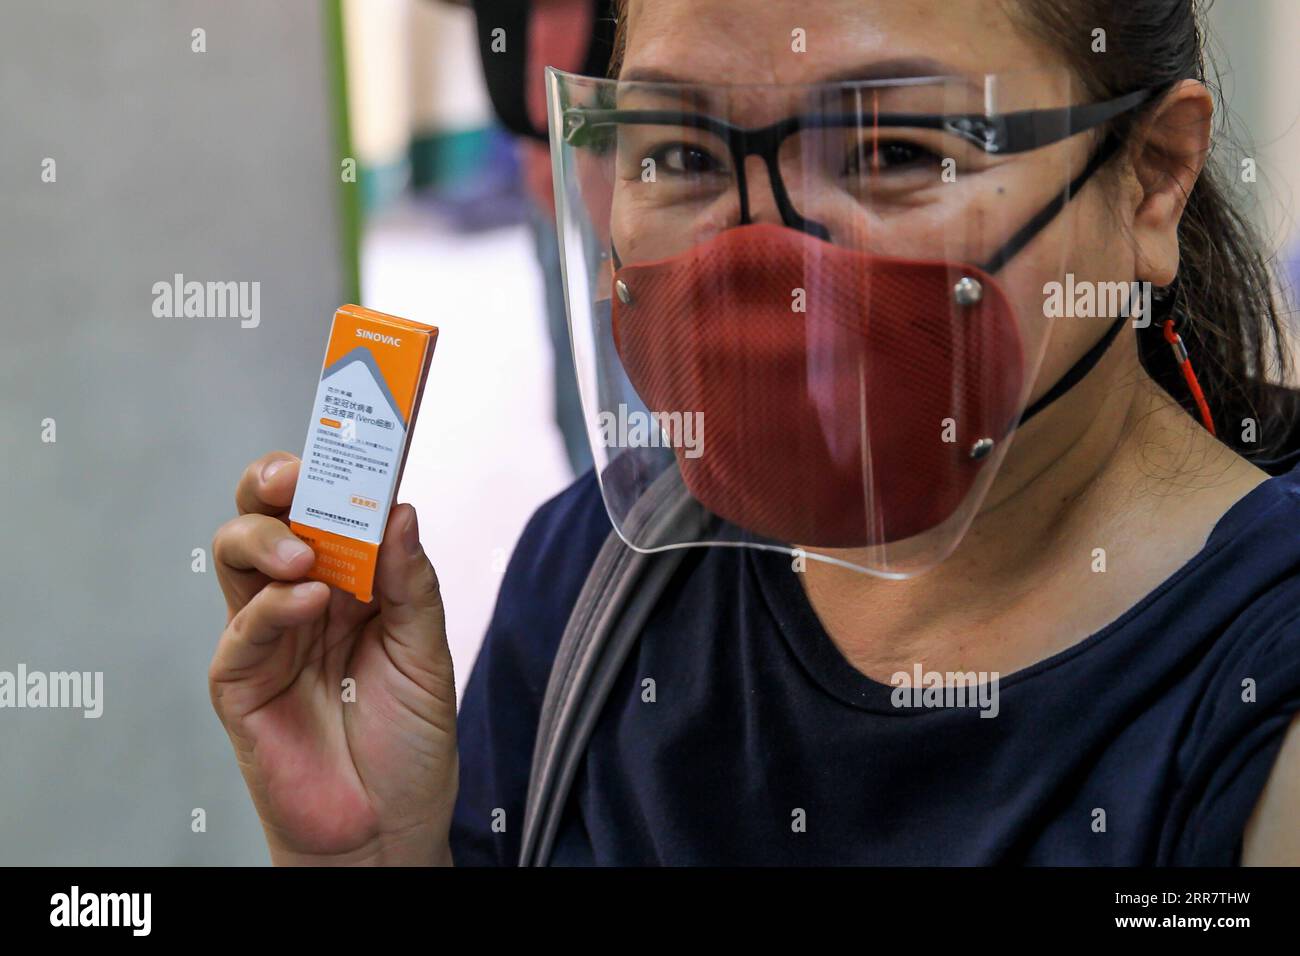 210404 -- MANILA, 4. April 2021 -- Ein Bewohner zeigt eine Schachtel CoronaVac COVID-19-Impfstoff, hergestellt von Sinovac Biotech, nachdem er am 4. April 2021 an einer Impfstelle in Manila auf den Philippinen geimpft wurde. Das philippinische Gesundheitsministerium DOH meldete am Sonntag 11.028 neue COVID-19-Infektionen, was die Gesamtzahl der bestätigten Fälle im südostasiatischen Land auf 795.051. Die Zahl der Todesopfer stieg auf 13.425, nachdem zwei weitere Patienten an der Viruserkrankung starben, sagte das DOH. PHILIPPINEN-MANILA-COVID-19-VACCINATION RouellexUmali PUBLICATIONxNOTxINxCHN Stockfoto